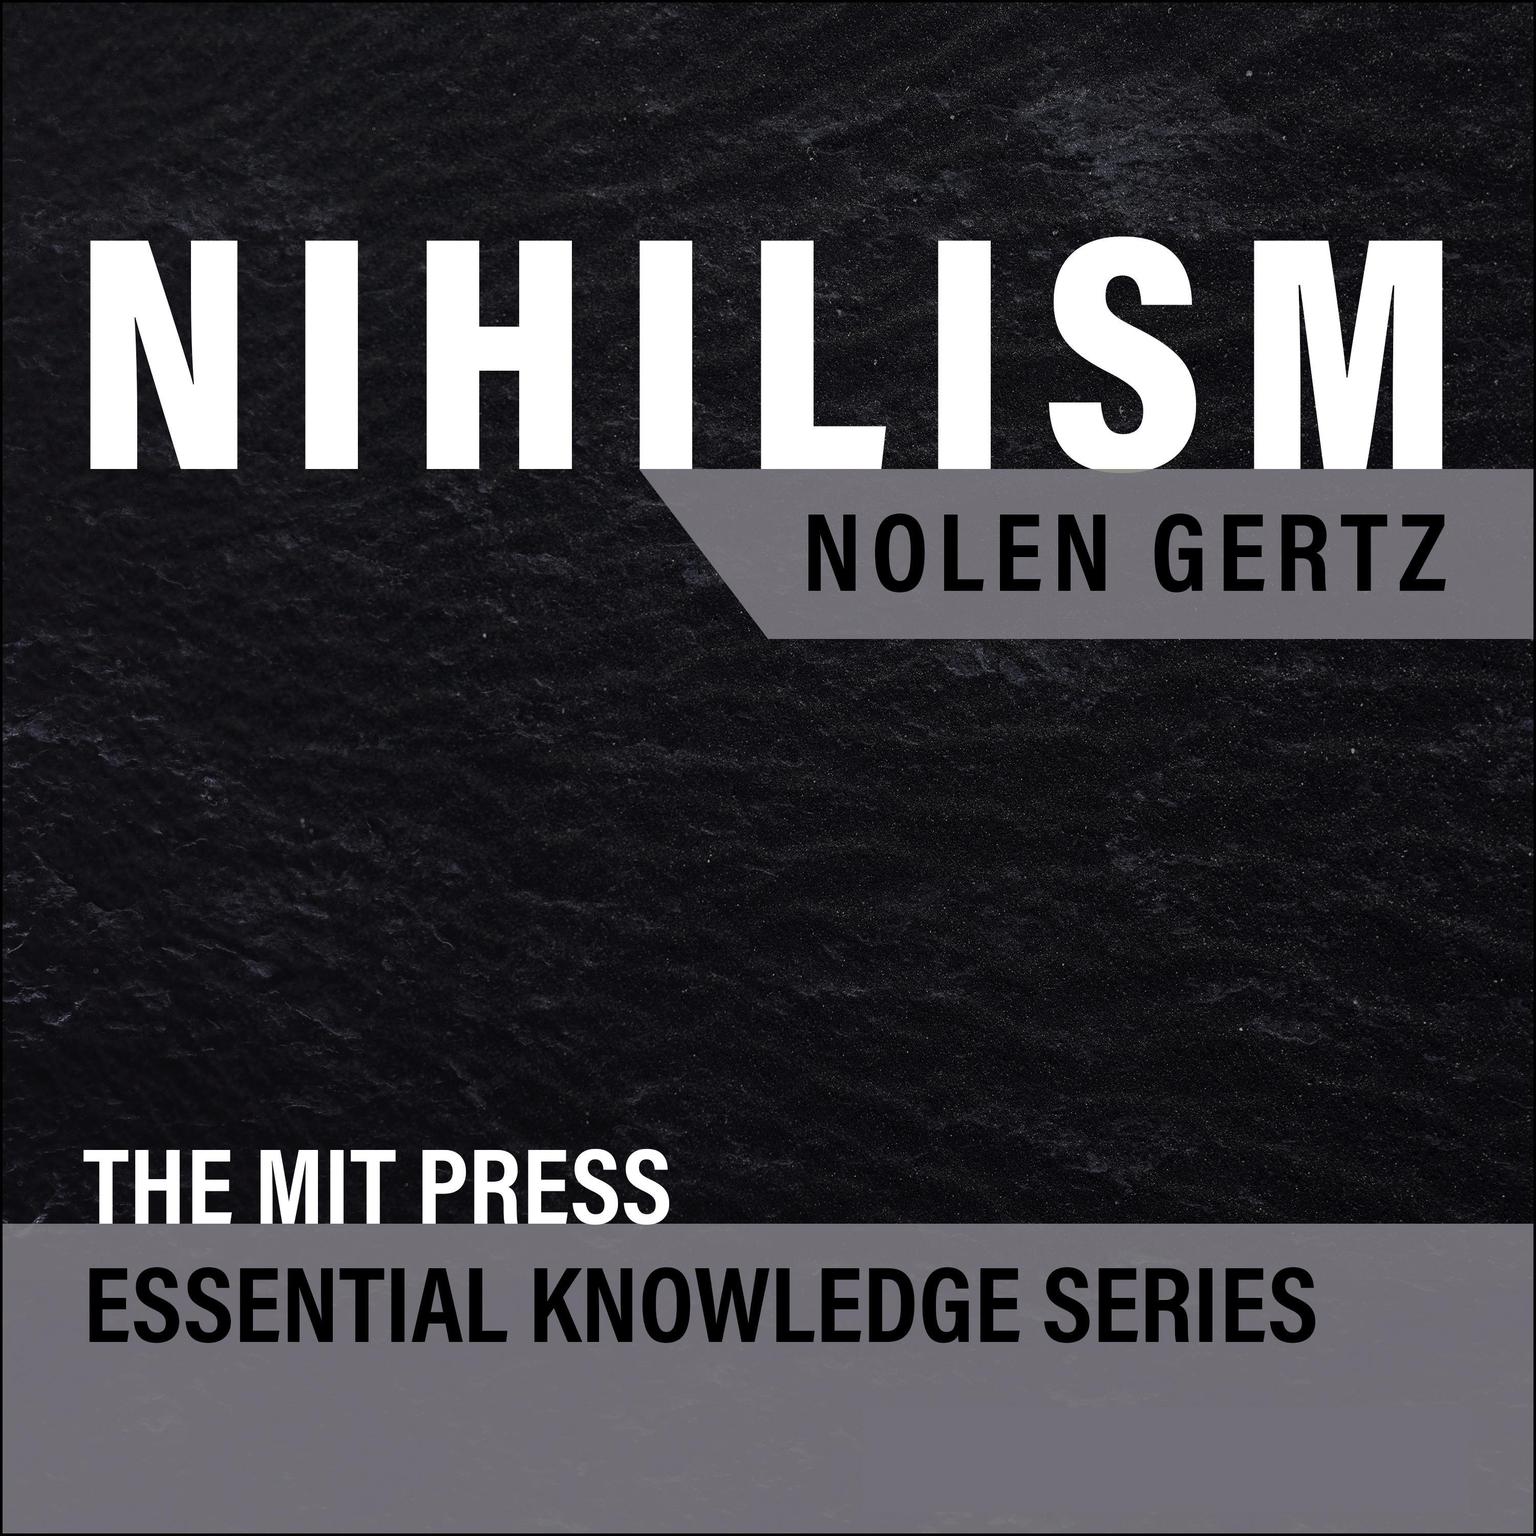 Nihilism Audiobook, by Nolen Gertz